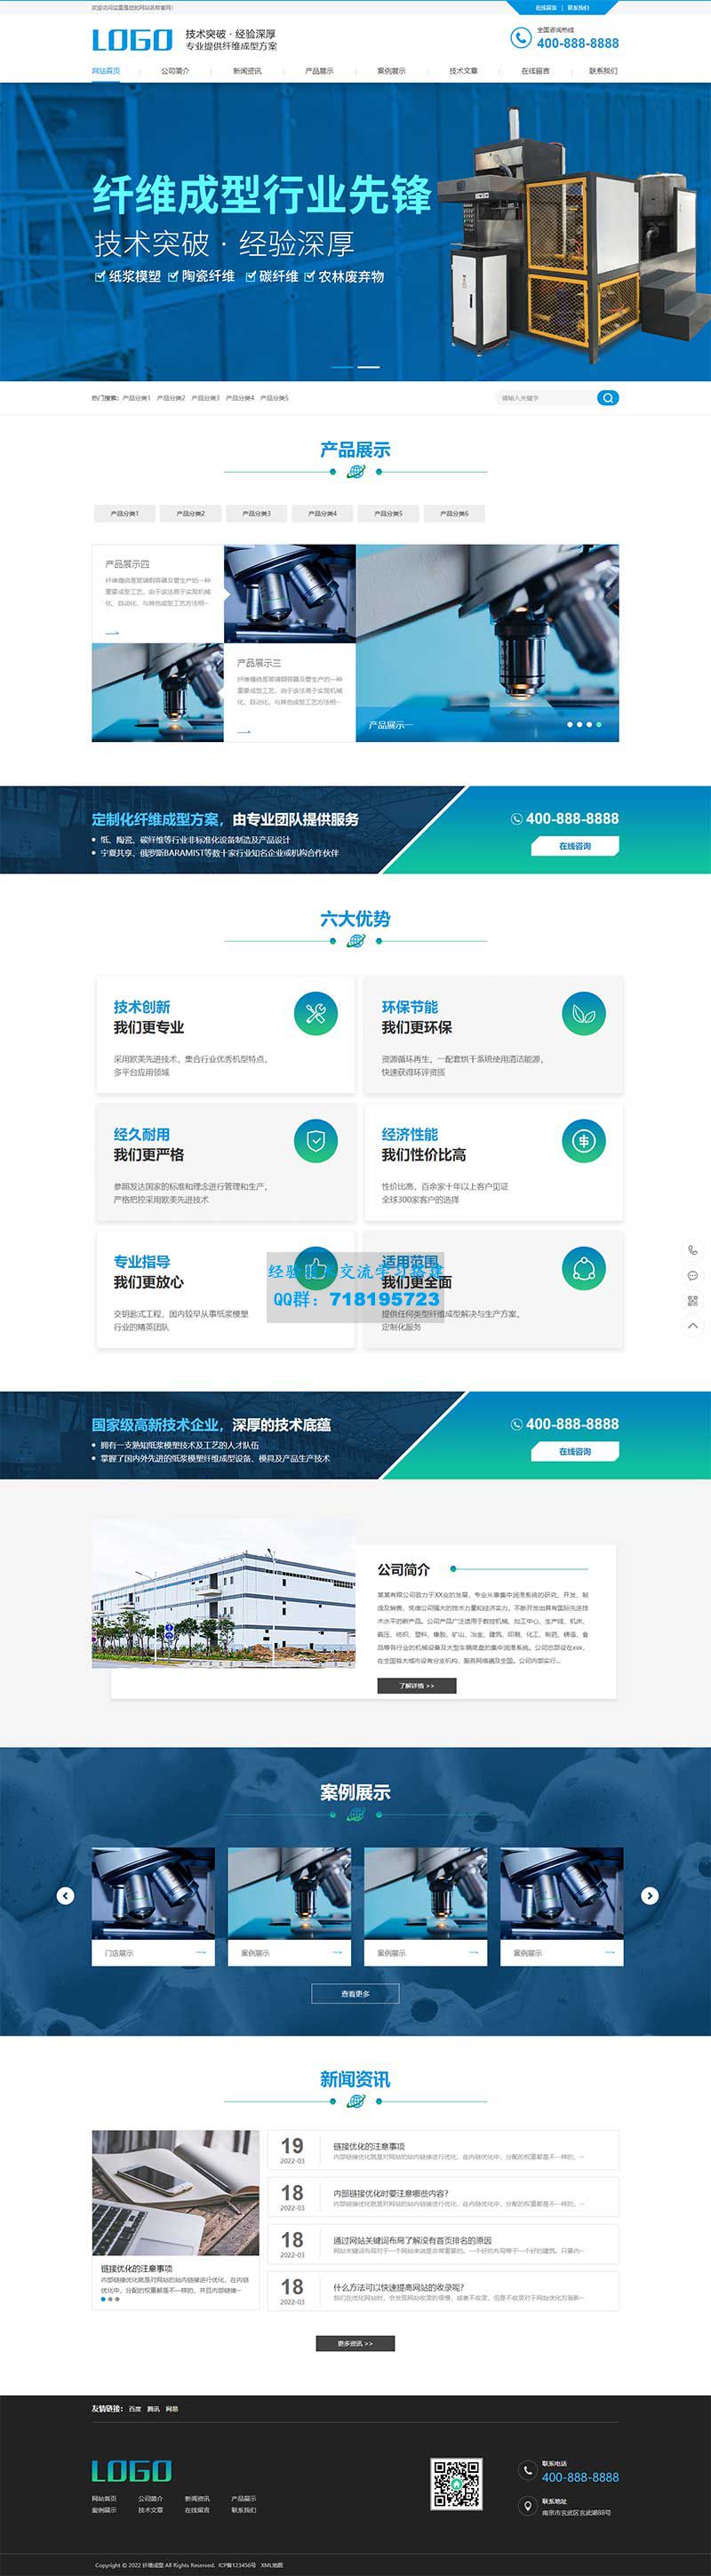     蓝色营销型纸浆模塑碳纤维机器网站源码 纤维成型行业设备pbootcms网站模板
